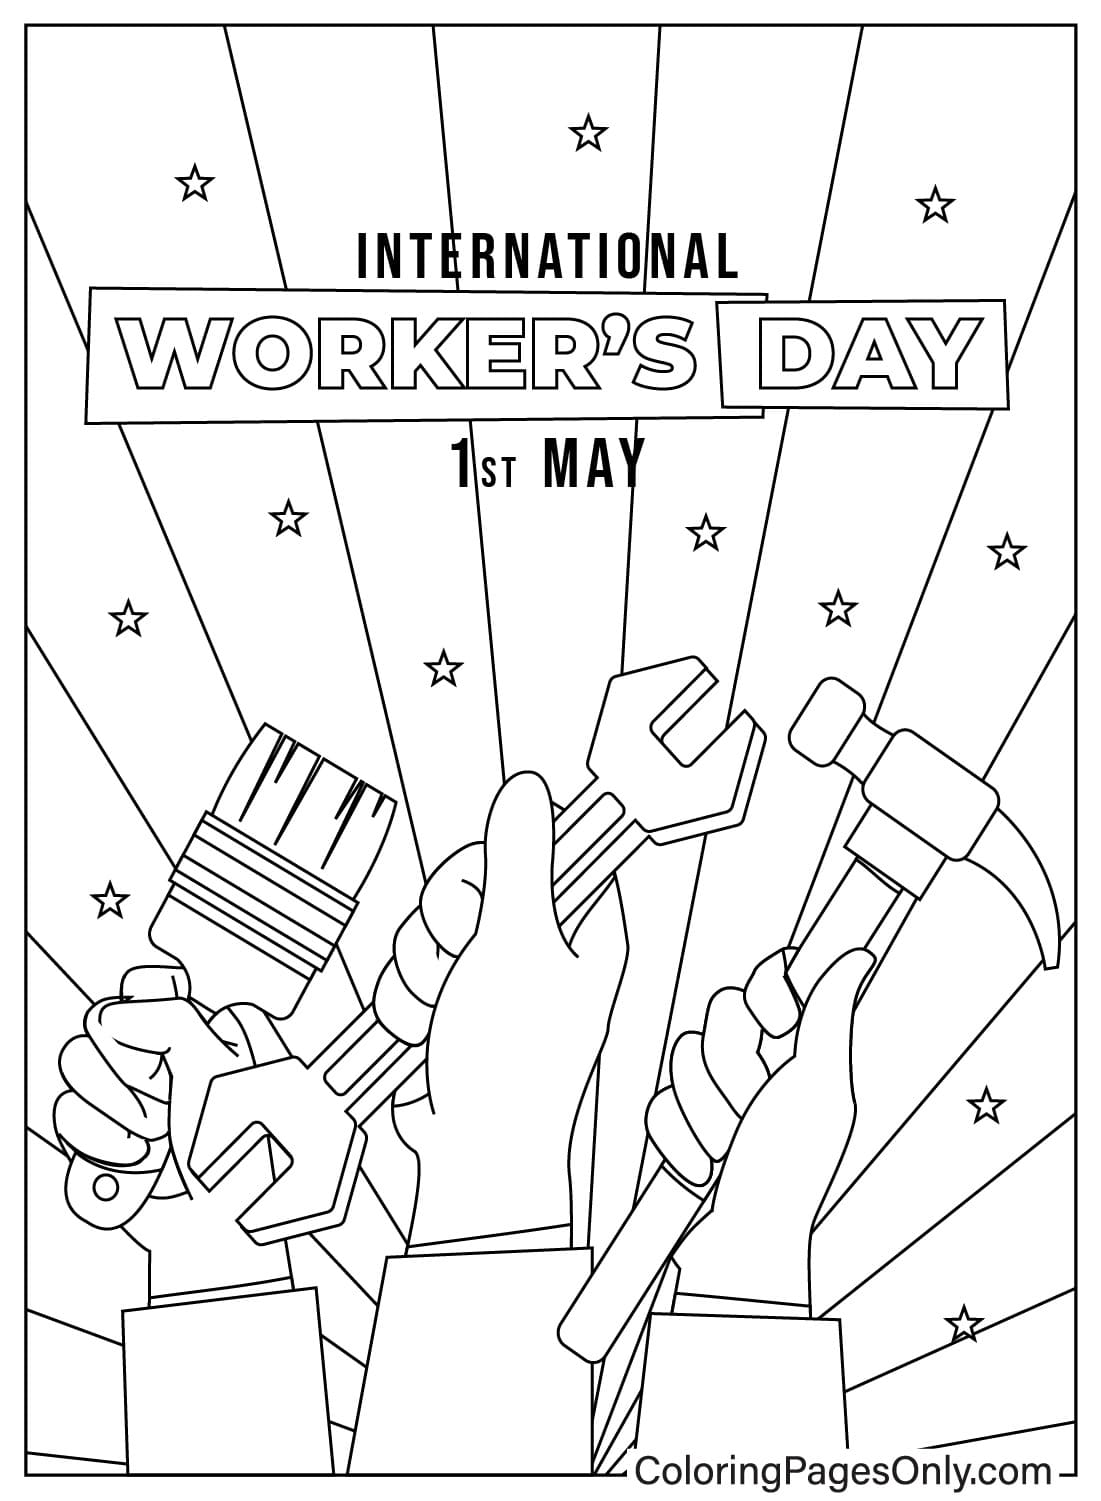 Página para colorear del Día Internacional del Trabajo de mayo de mayo